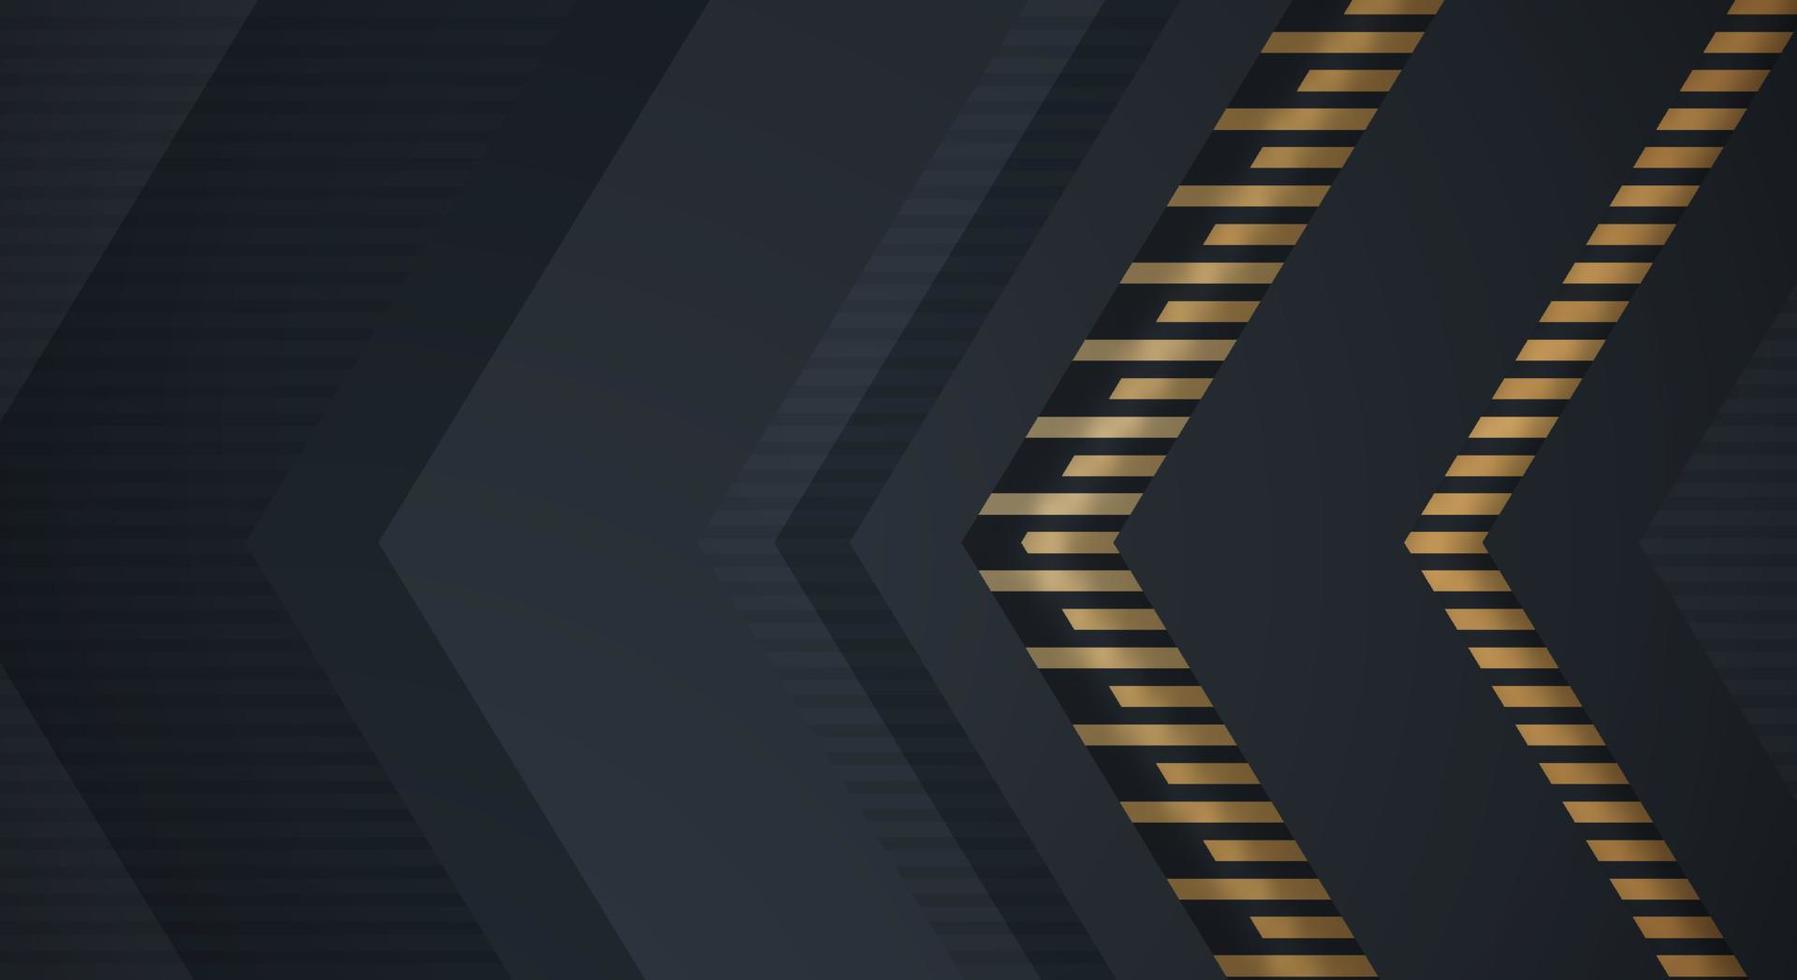 abstrakt mörk Marin svart bakgrund med guld linje pil riktning geometrisk triangel design modern trogen vektor